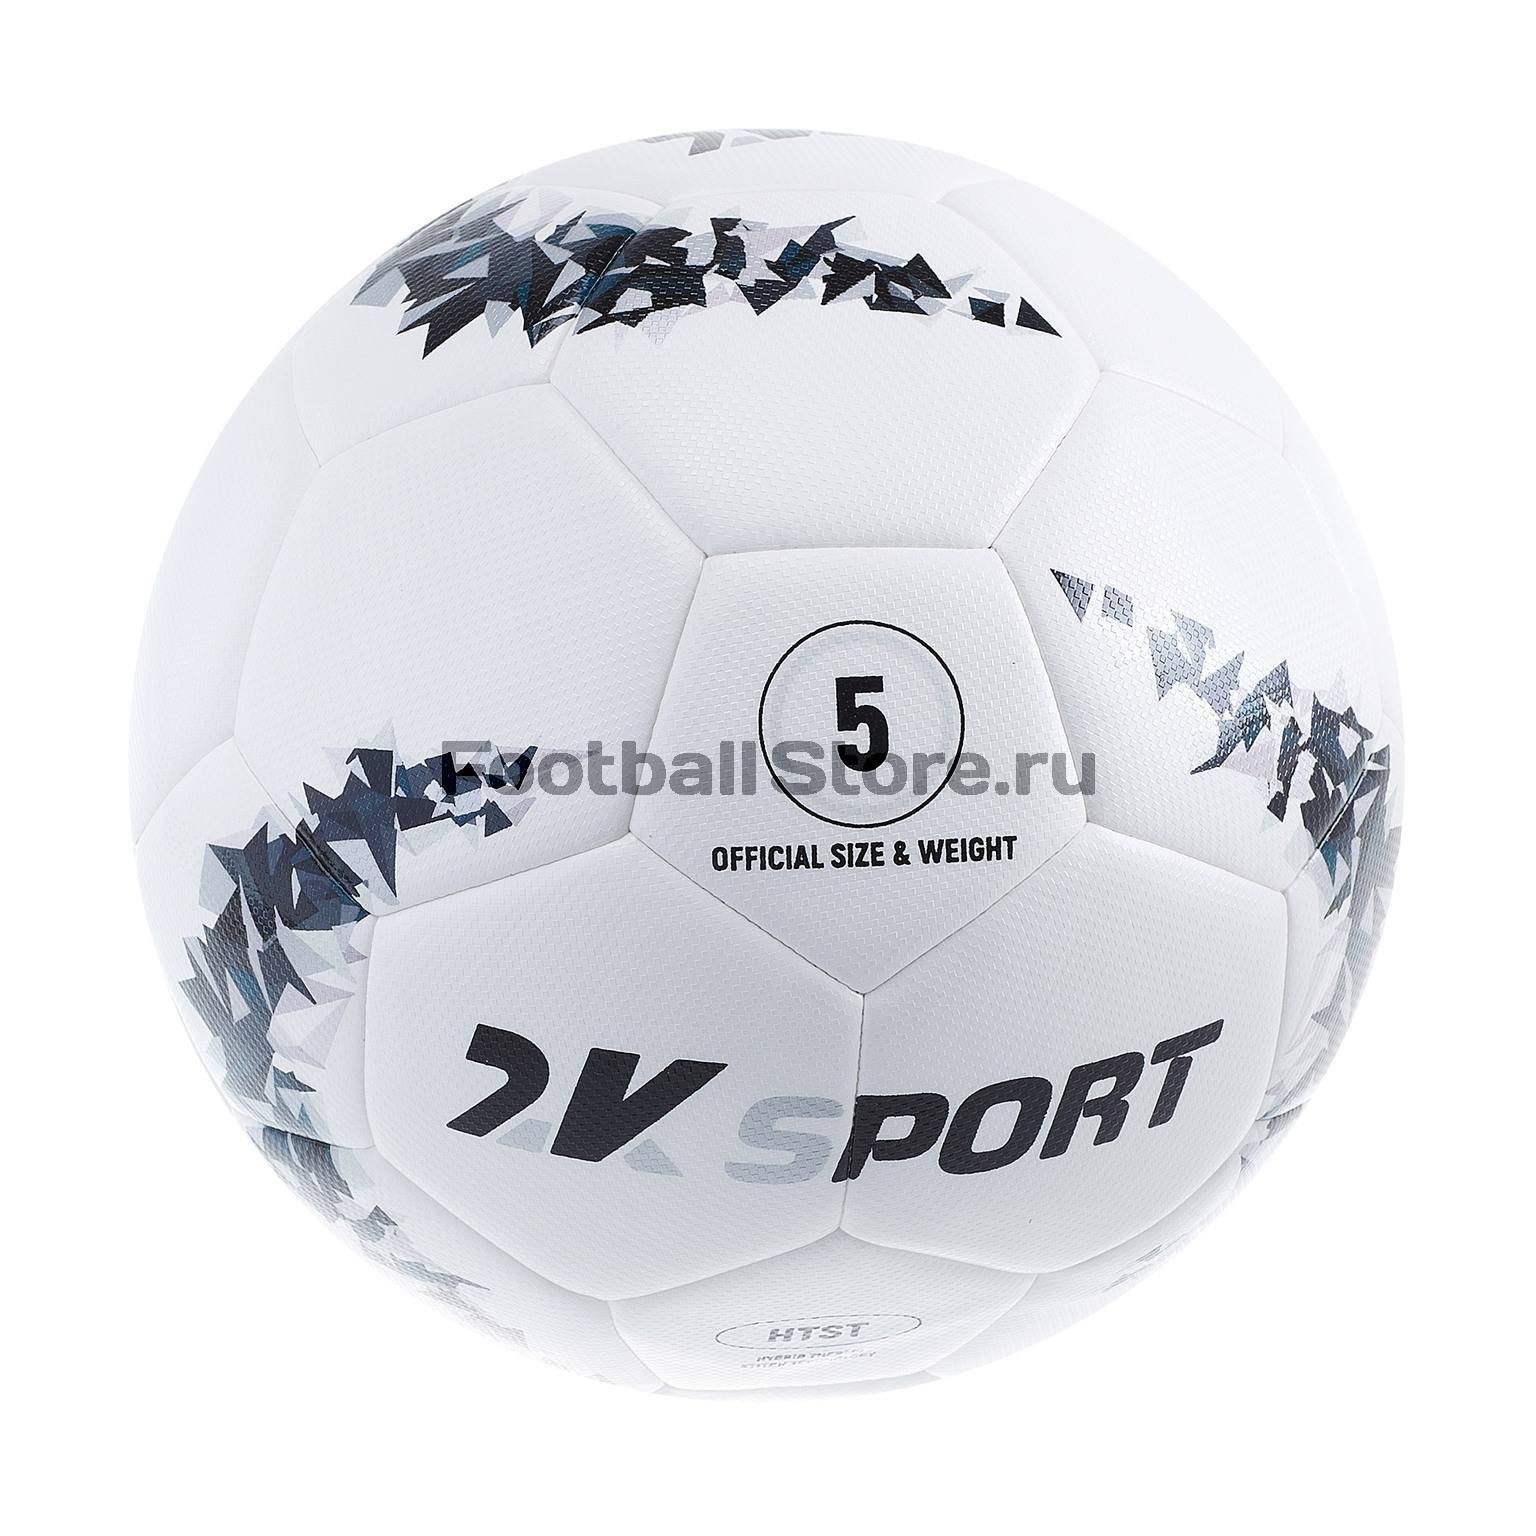 Футбольный мяч 2K Sport Crystal Hybrid 127088